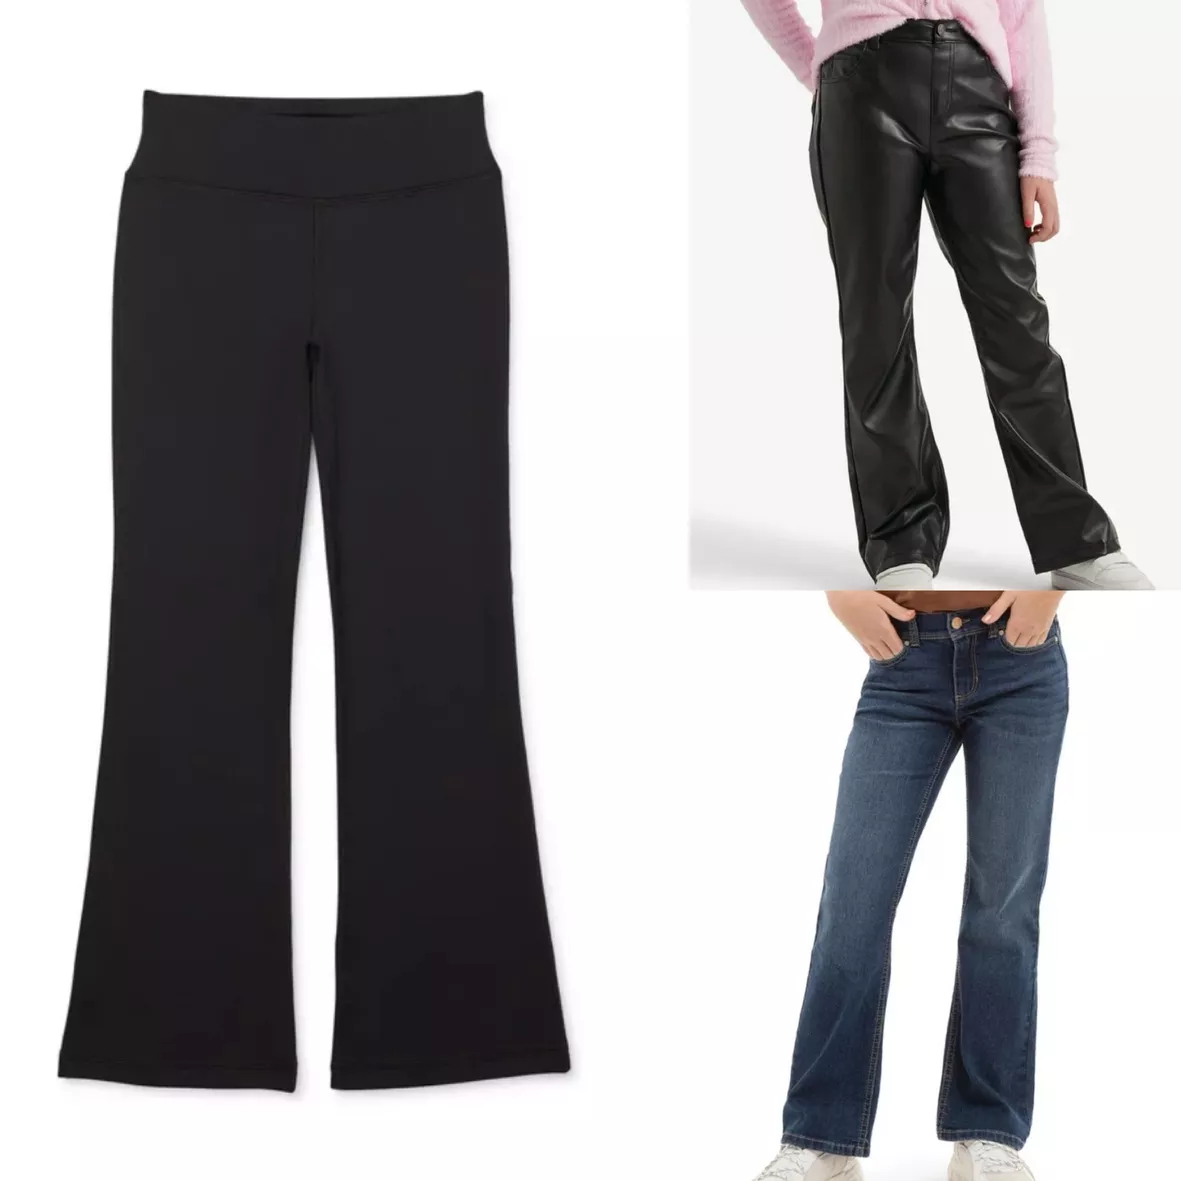 Jordache Girls Bootcut Jeans, Sizes 5-18 & Plus